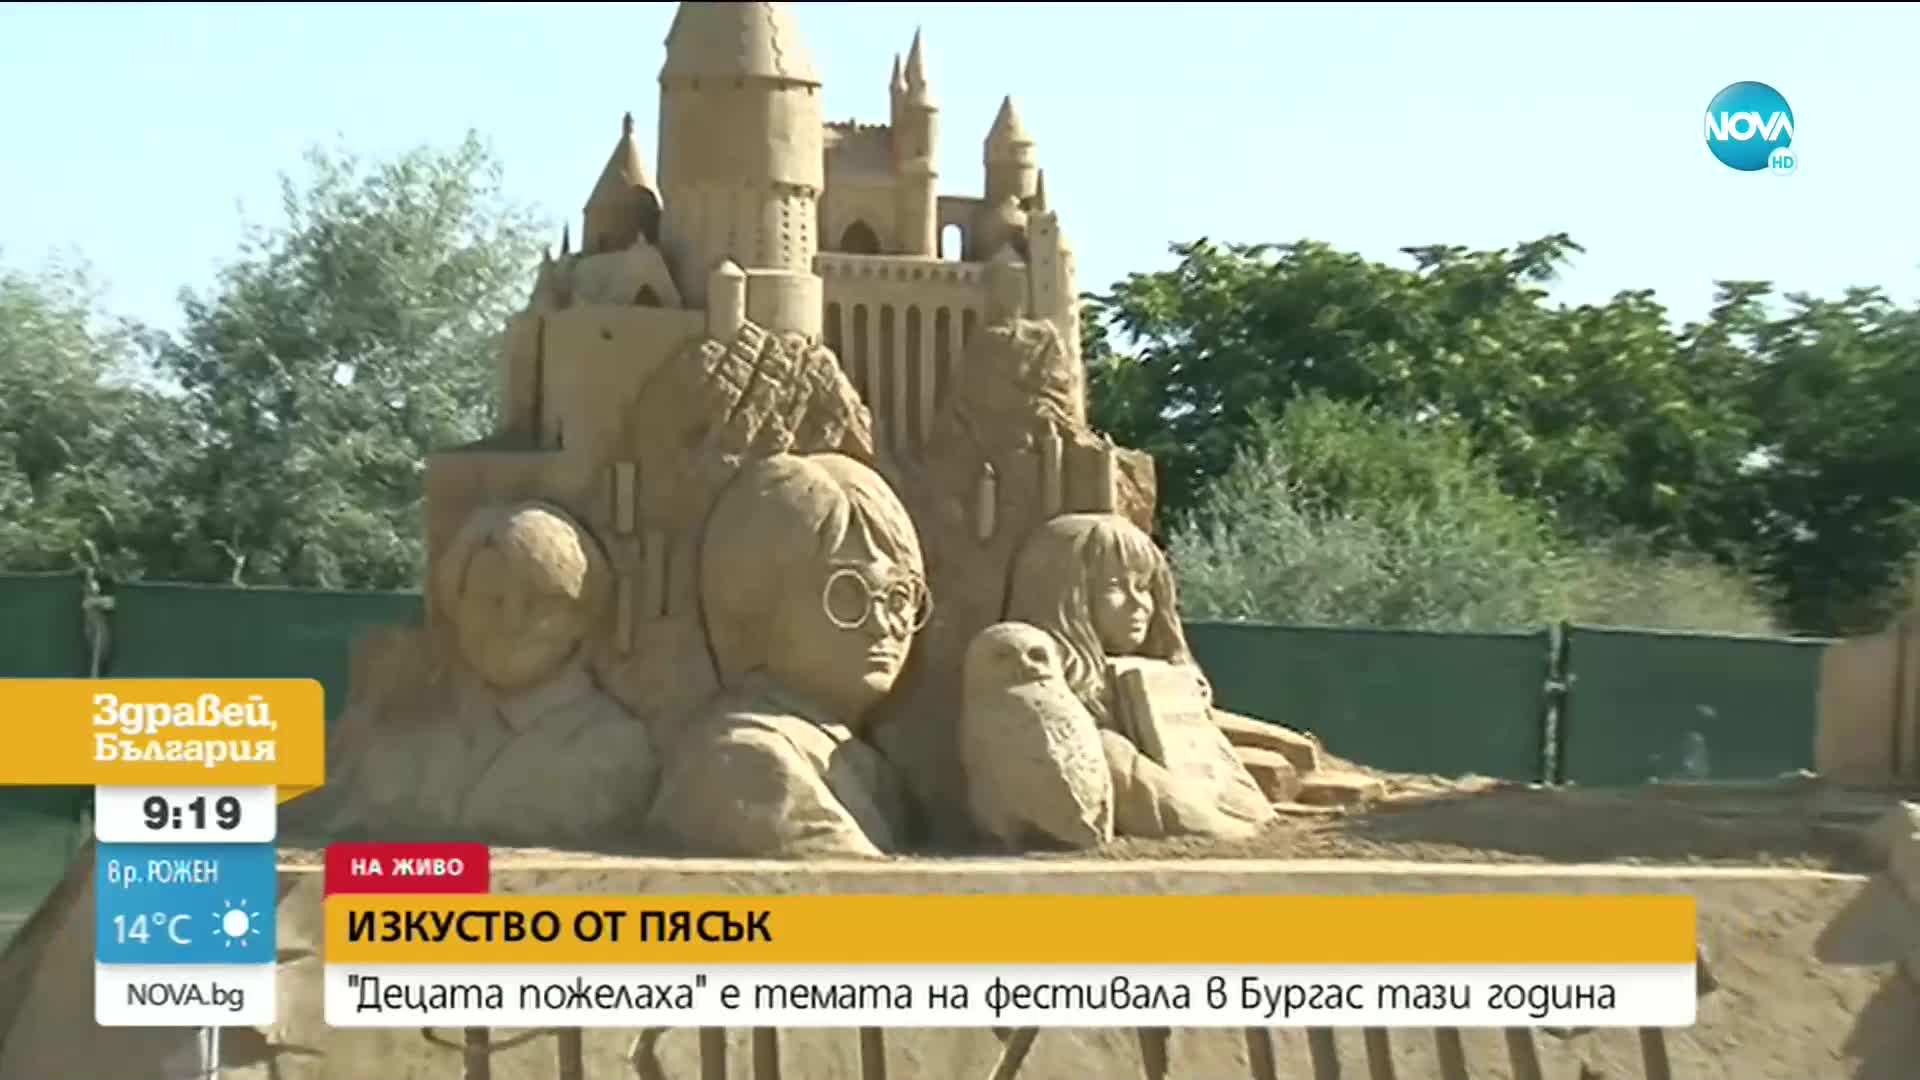 „Децата пожелаха" е темата на тазгодишното издание на Фестивала на пясъчните фигури в Бургас